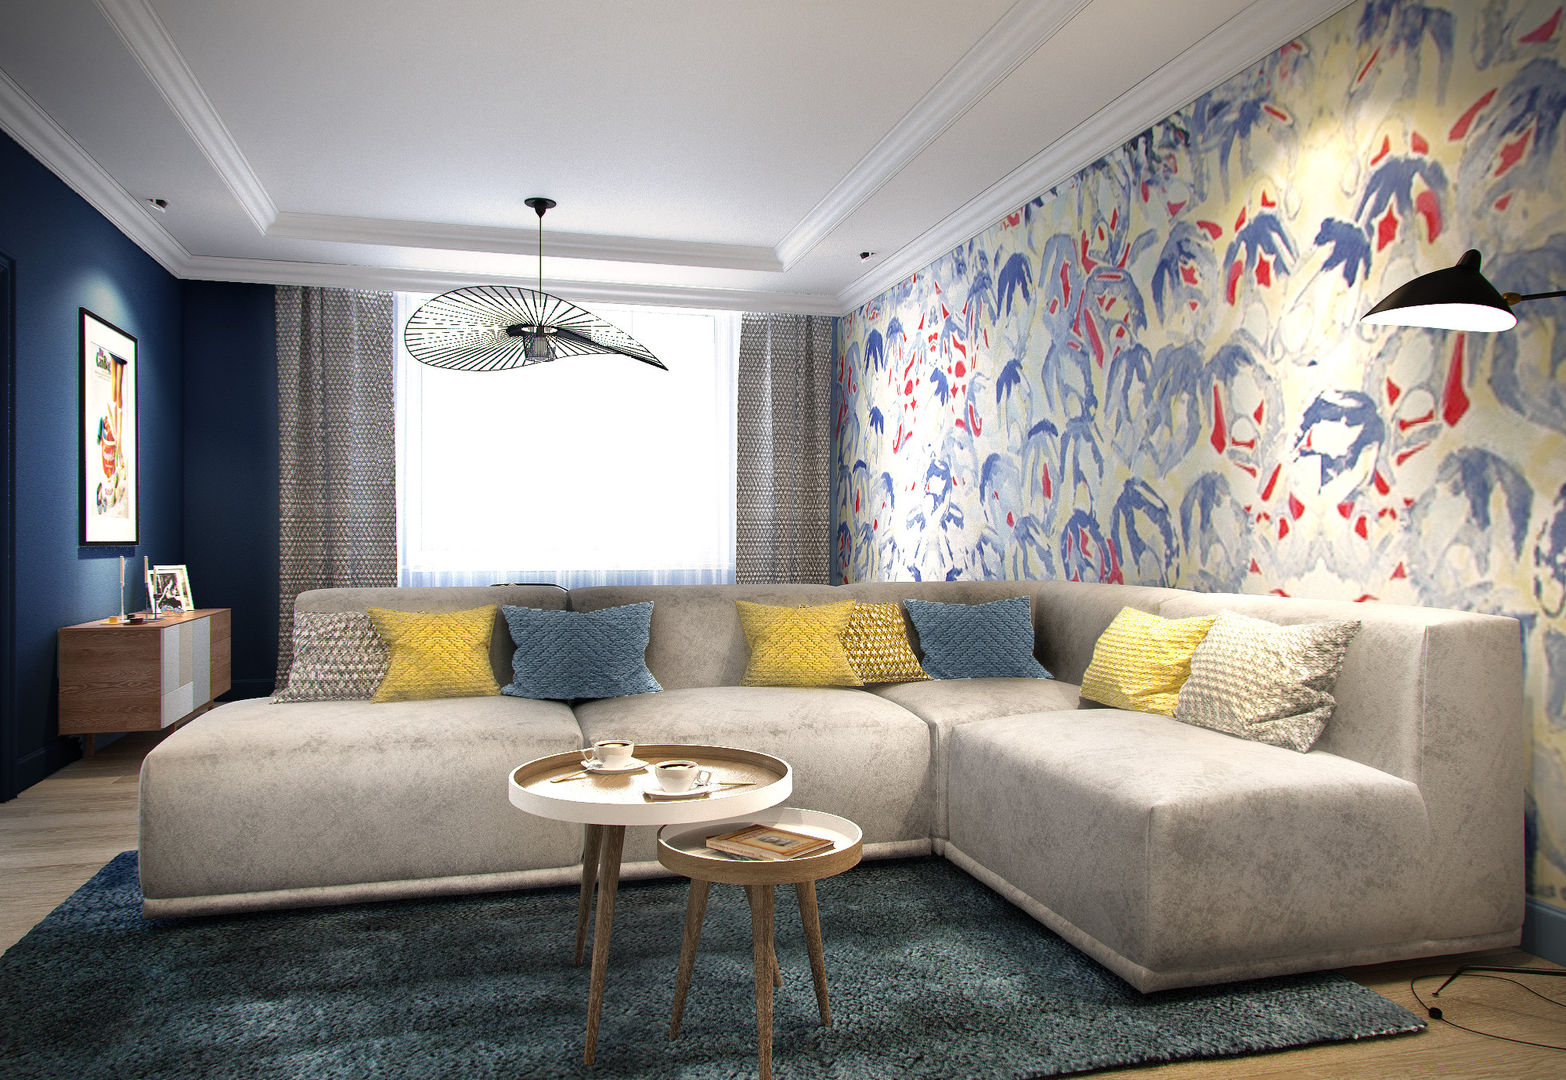 Трехкомнатная квартира для молодой семьи в современном стиле с элементами поп-арта, Studio 25 Studio 25 Scandinavian style living room